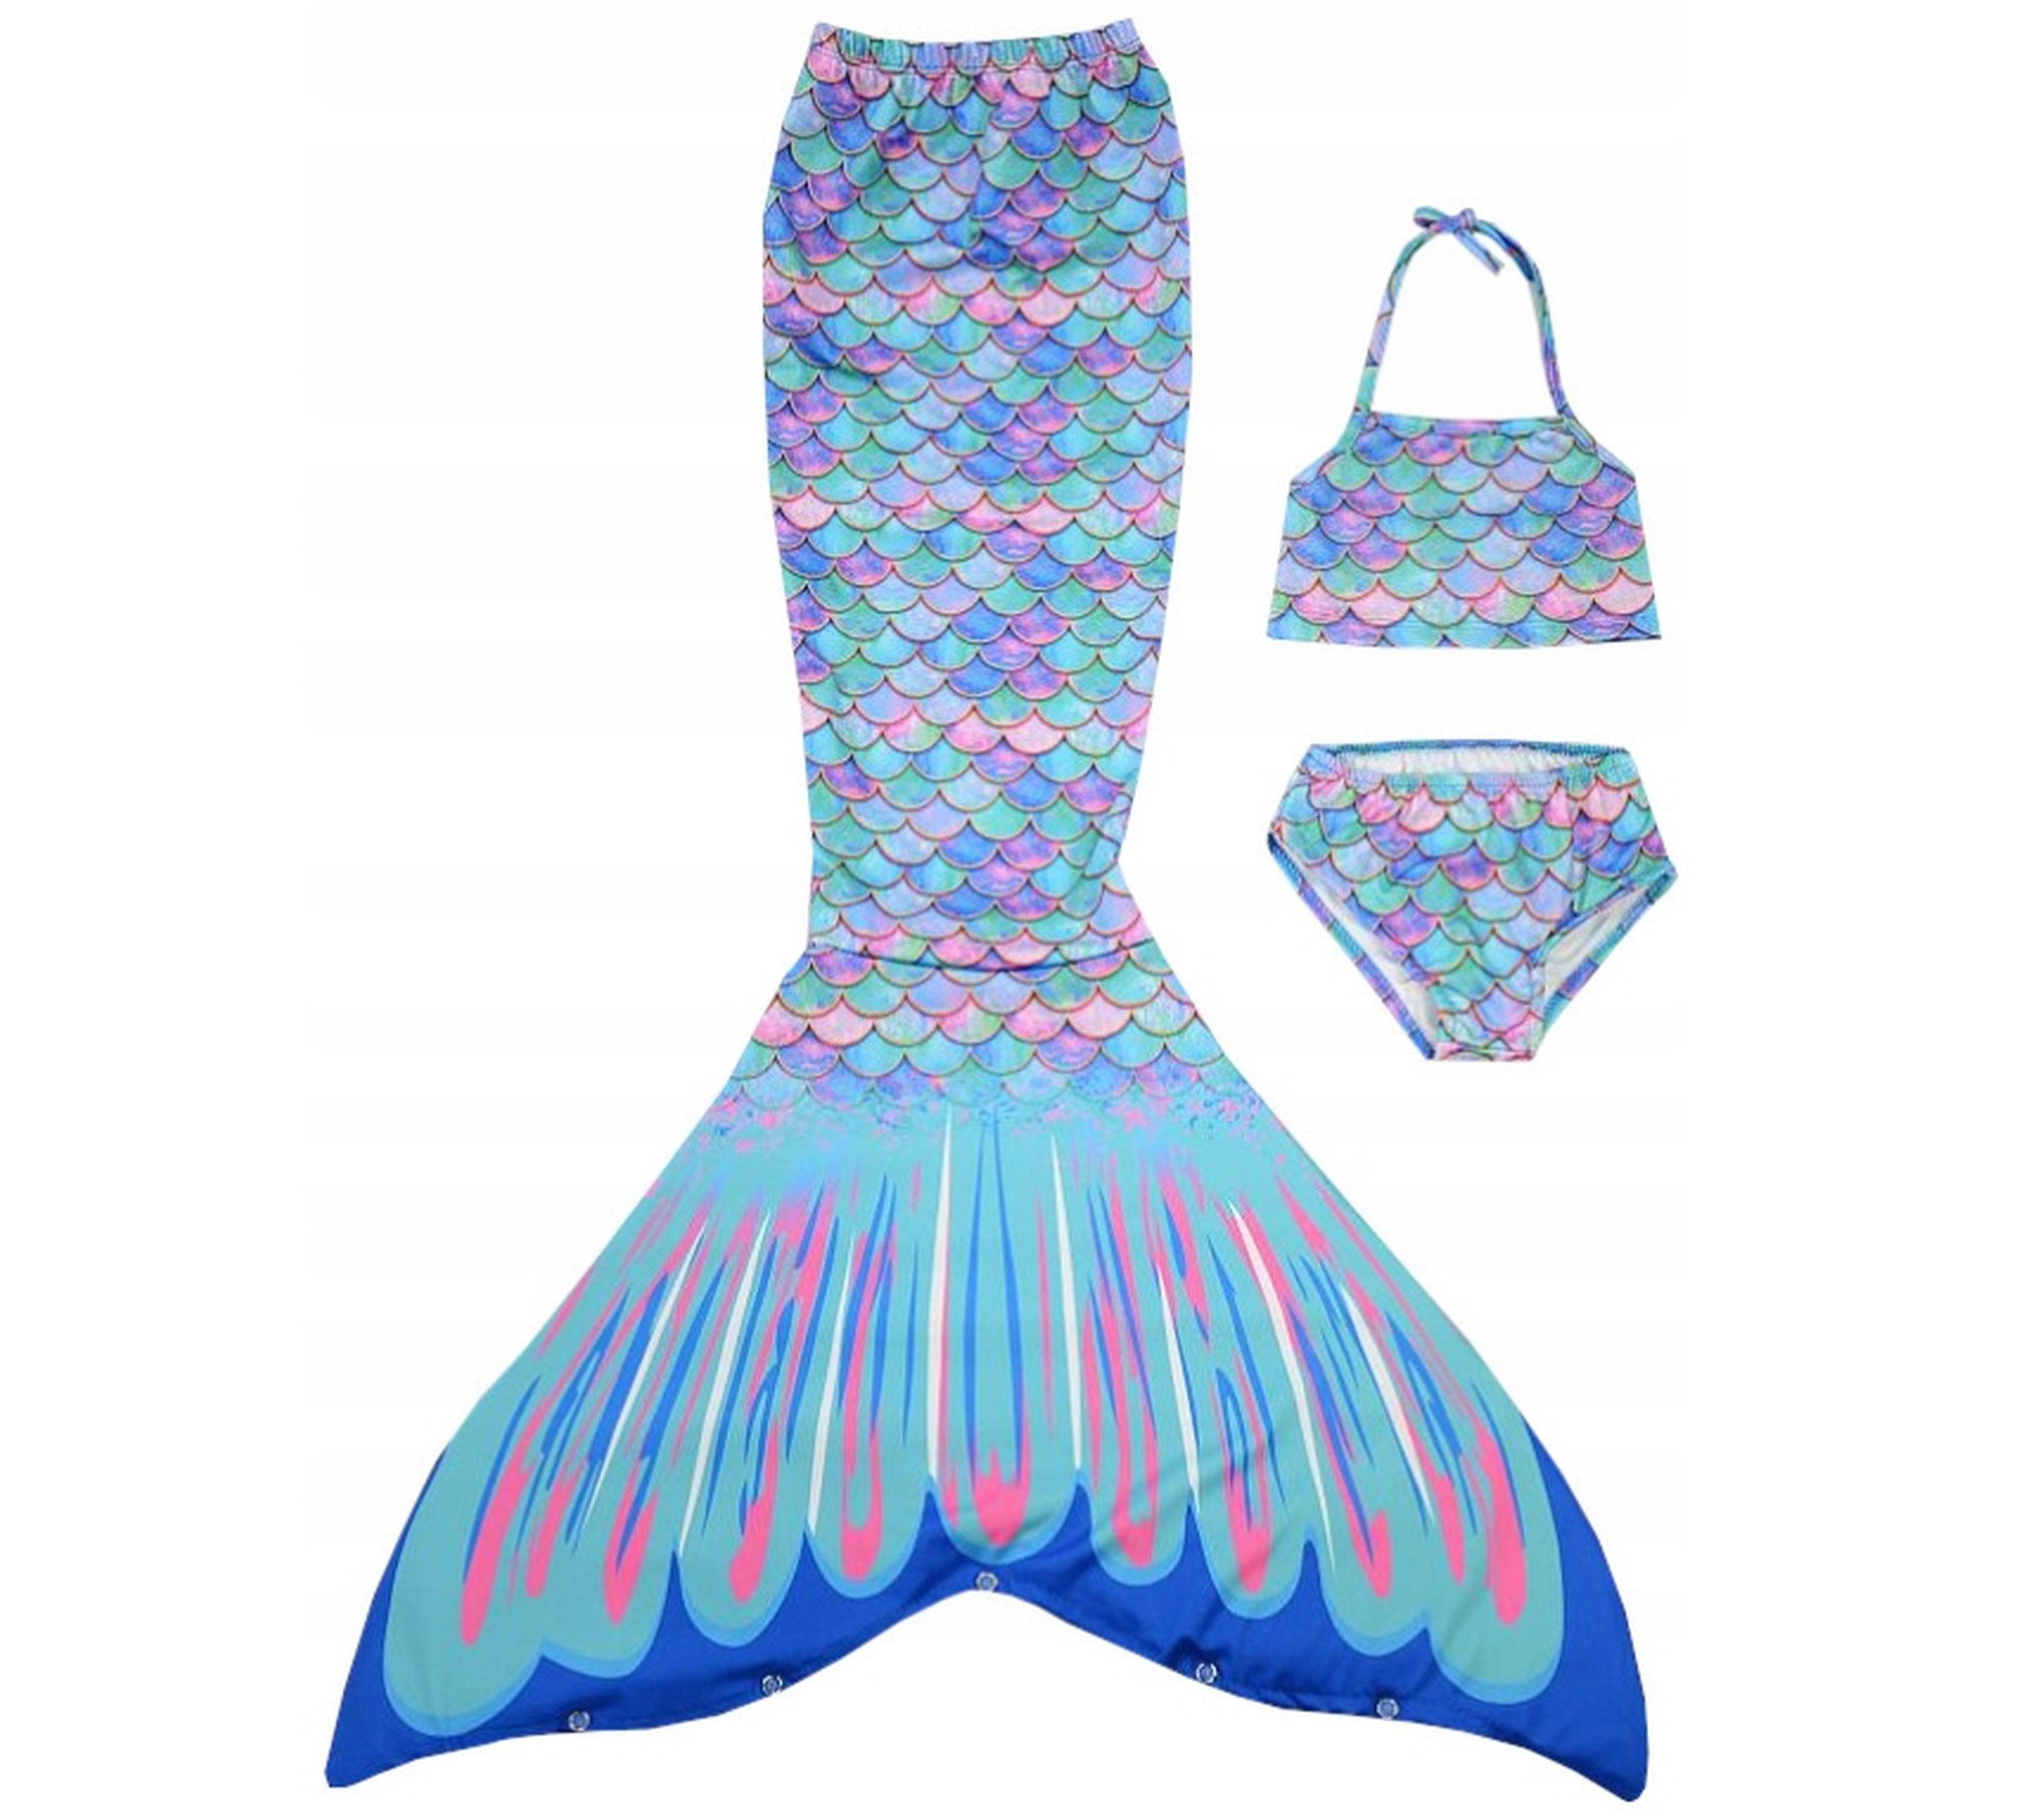 Festivalartikel Badeanzug Zweiteiliger Badeanzug Mädchen Meerjungfrau Mermaid